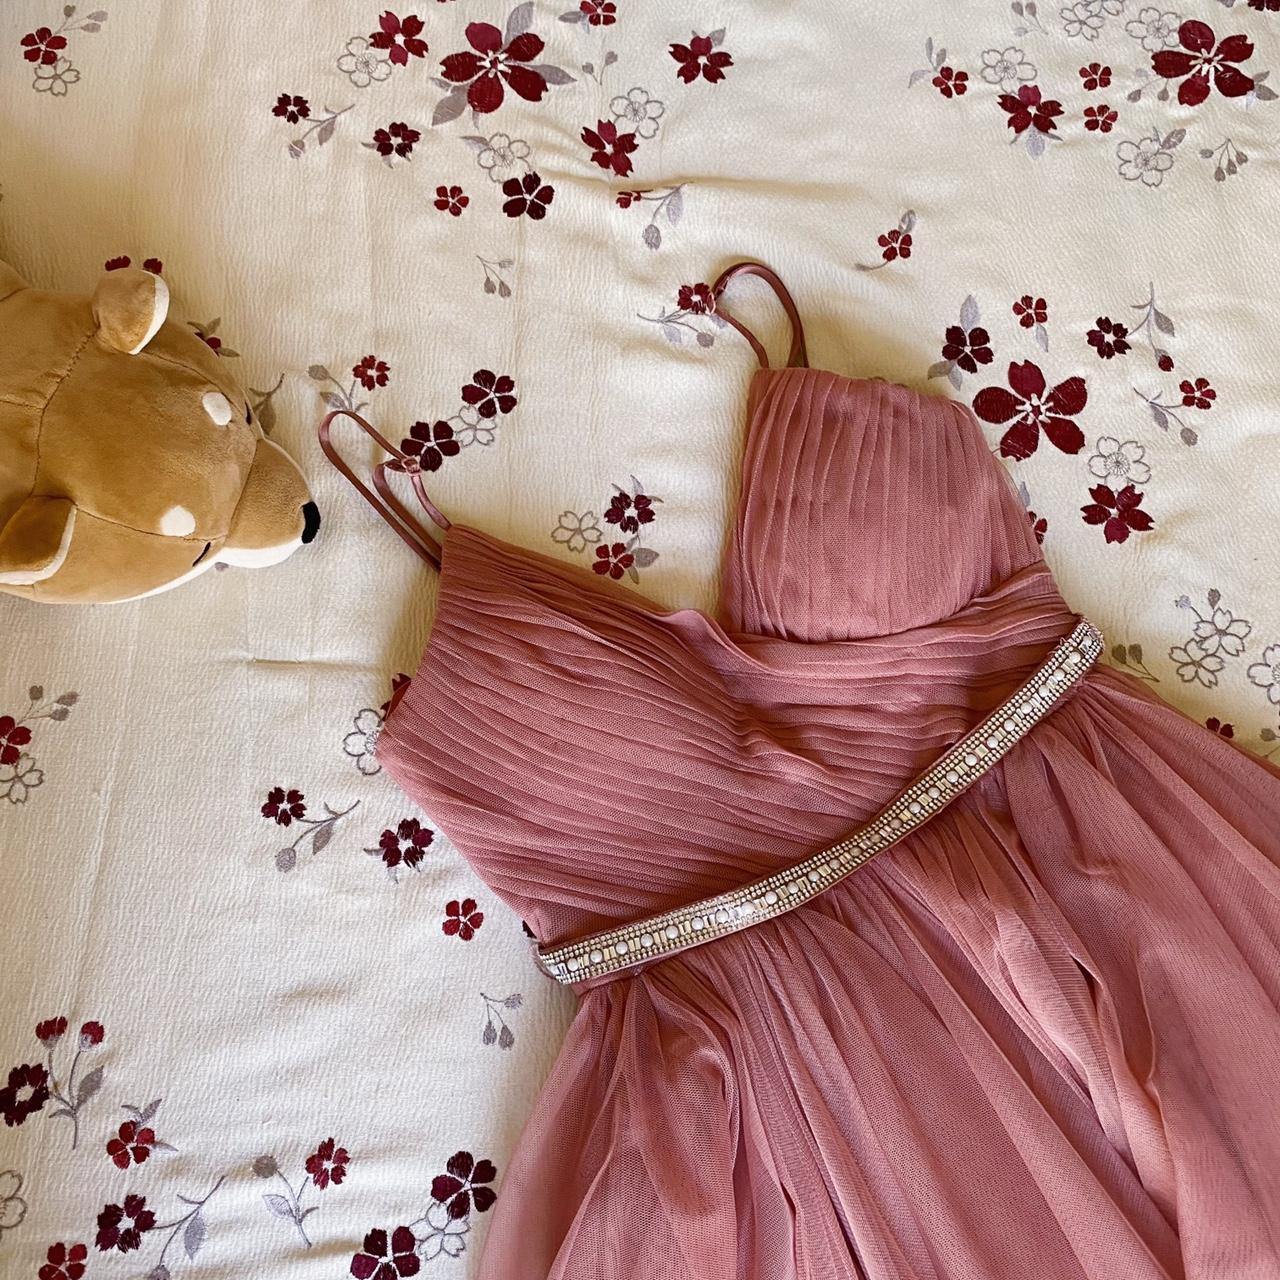 Macy's Women's Pink Dress | Depop